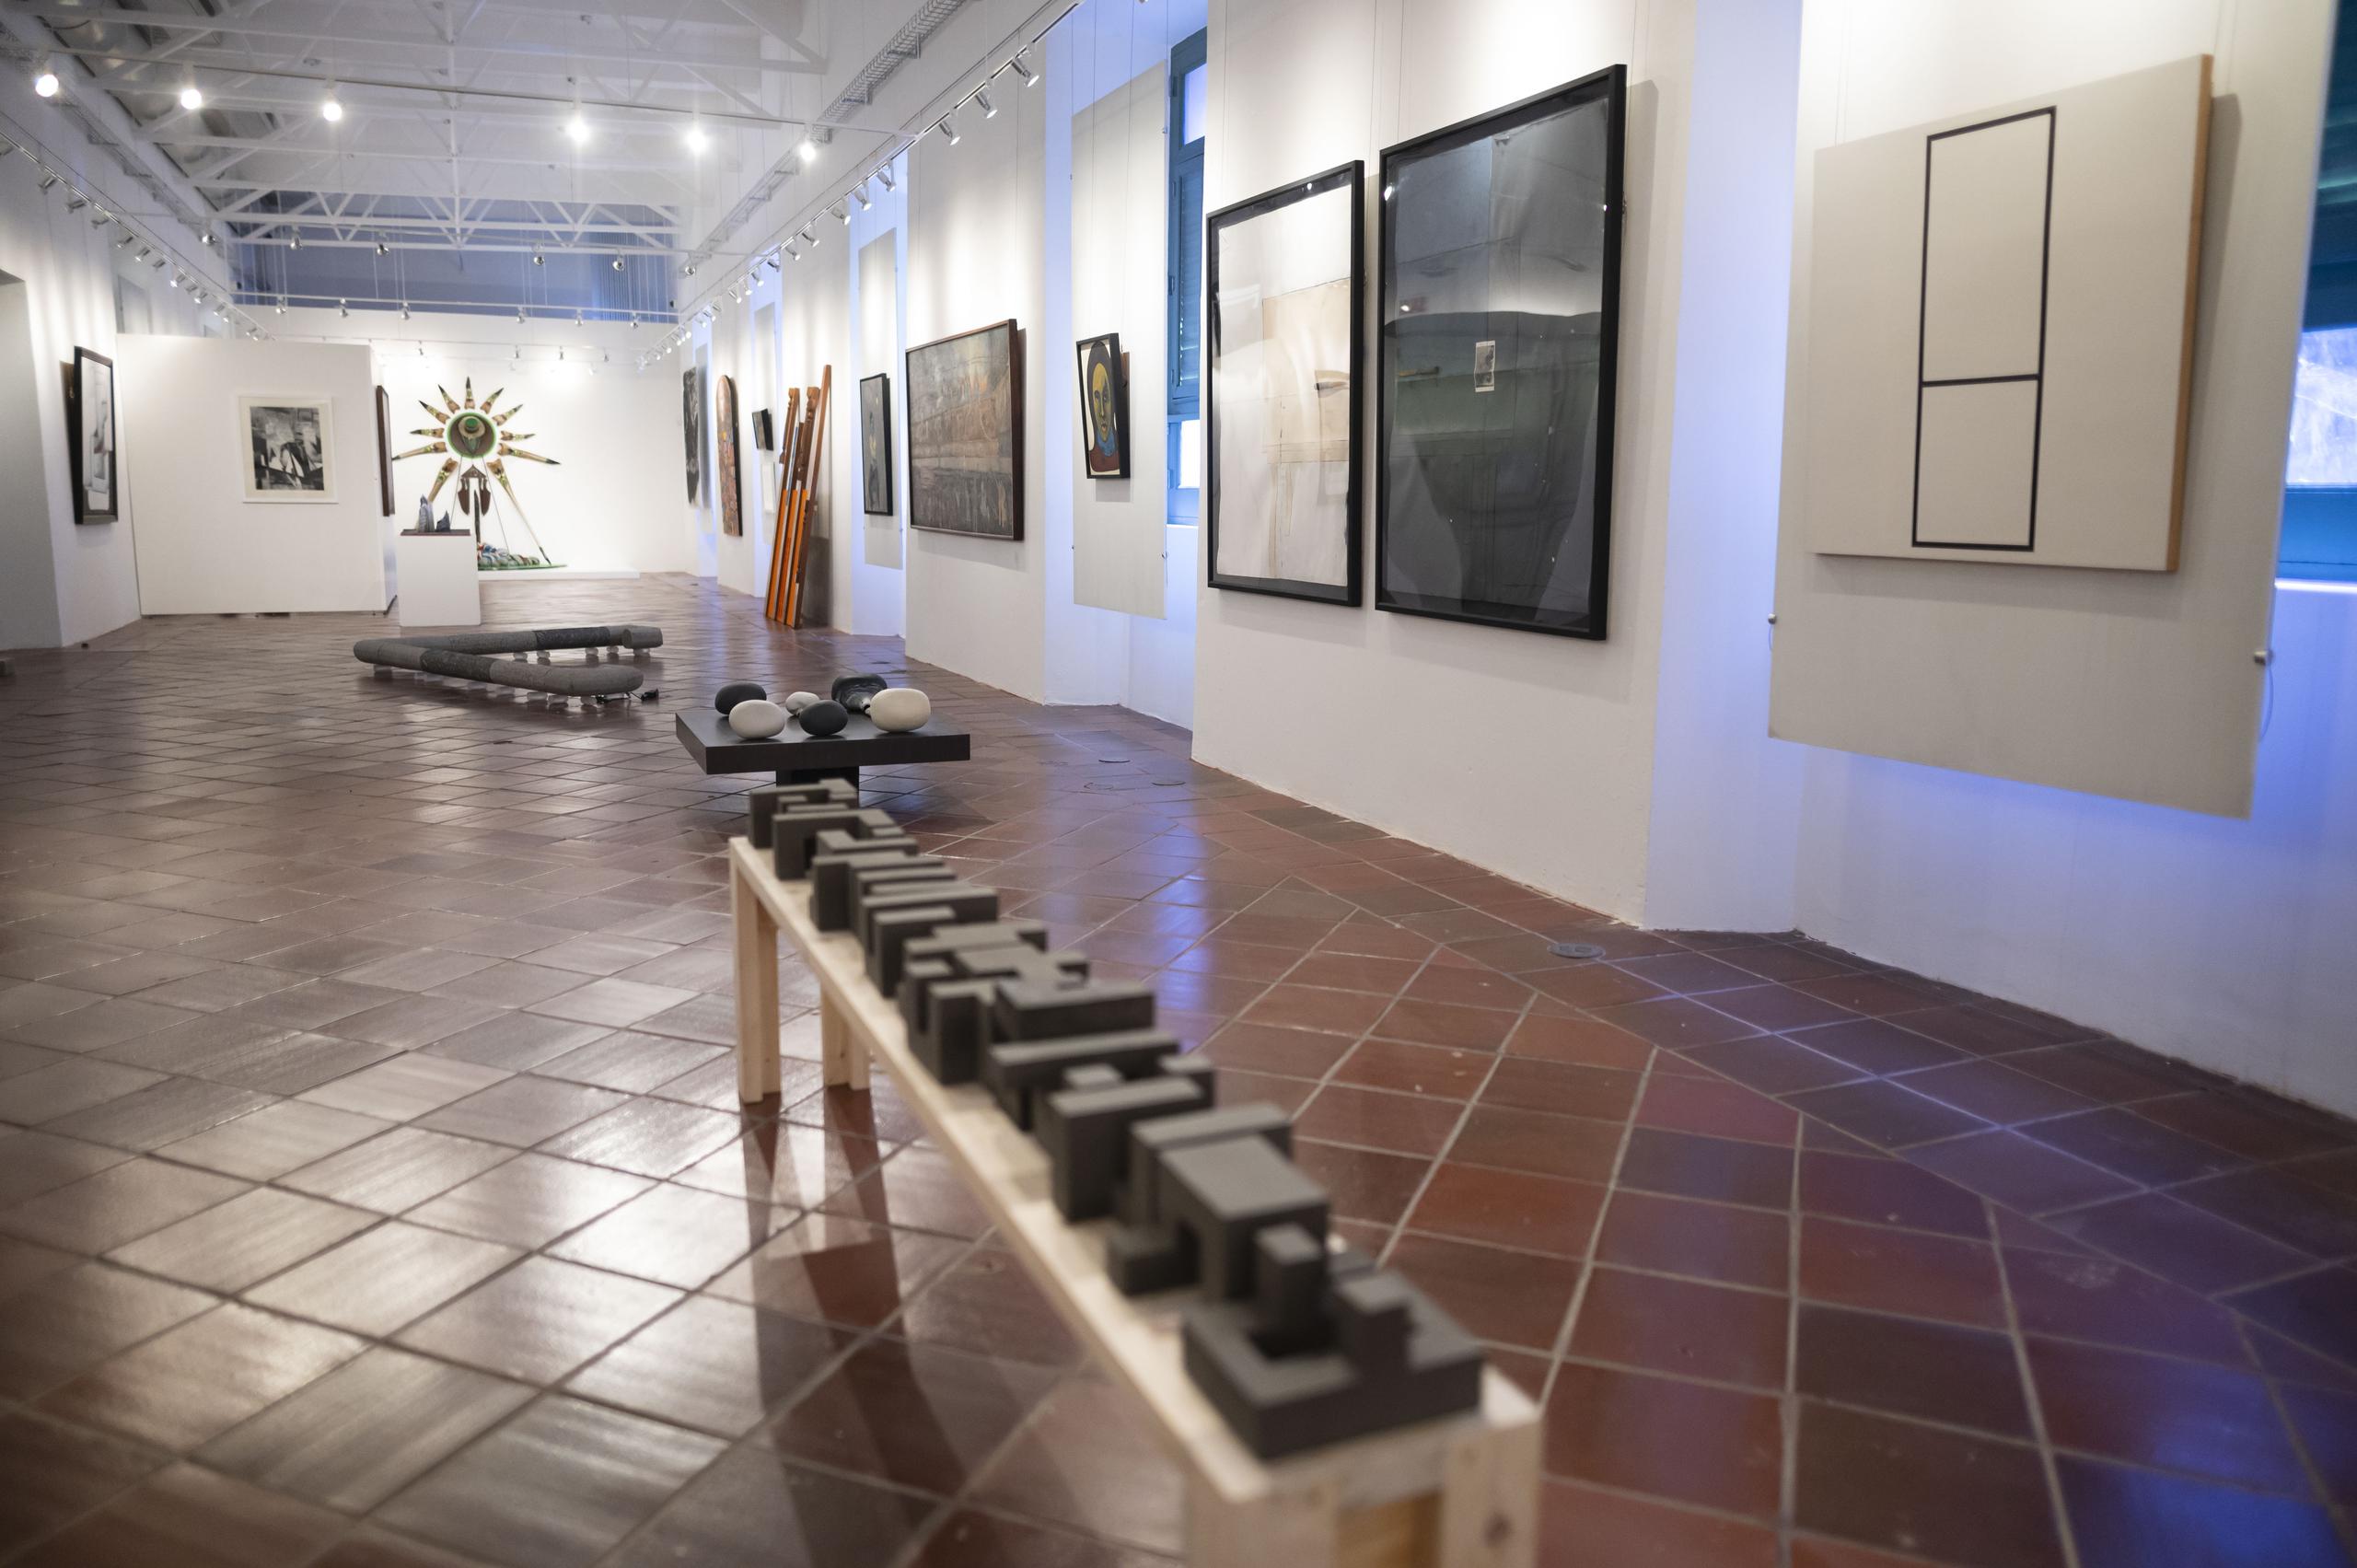 La "Muestra Legado" marca la apertura de la galería con 127 obras de unos 110 artistas puertorriqueños.